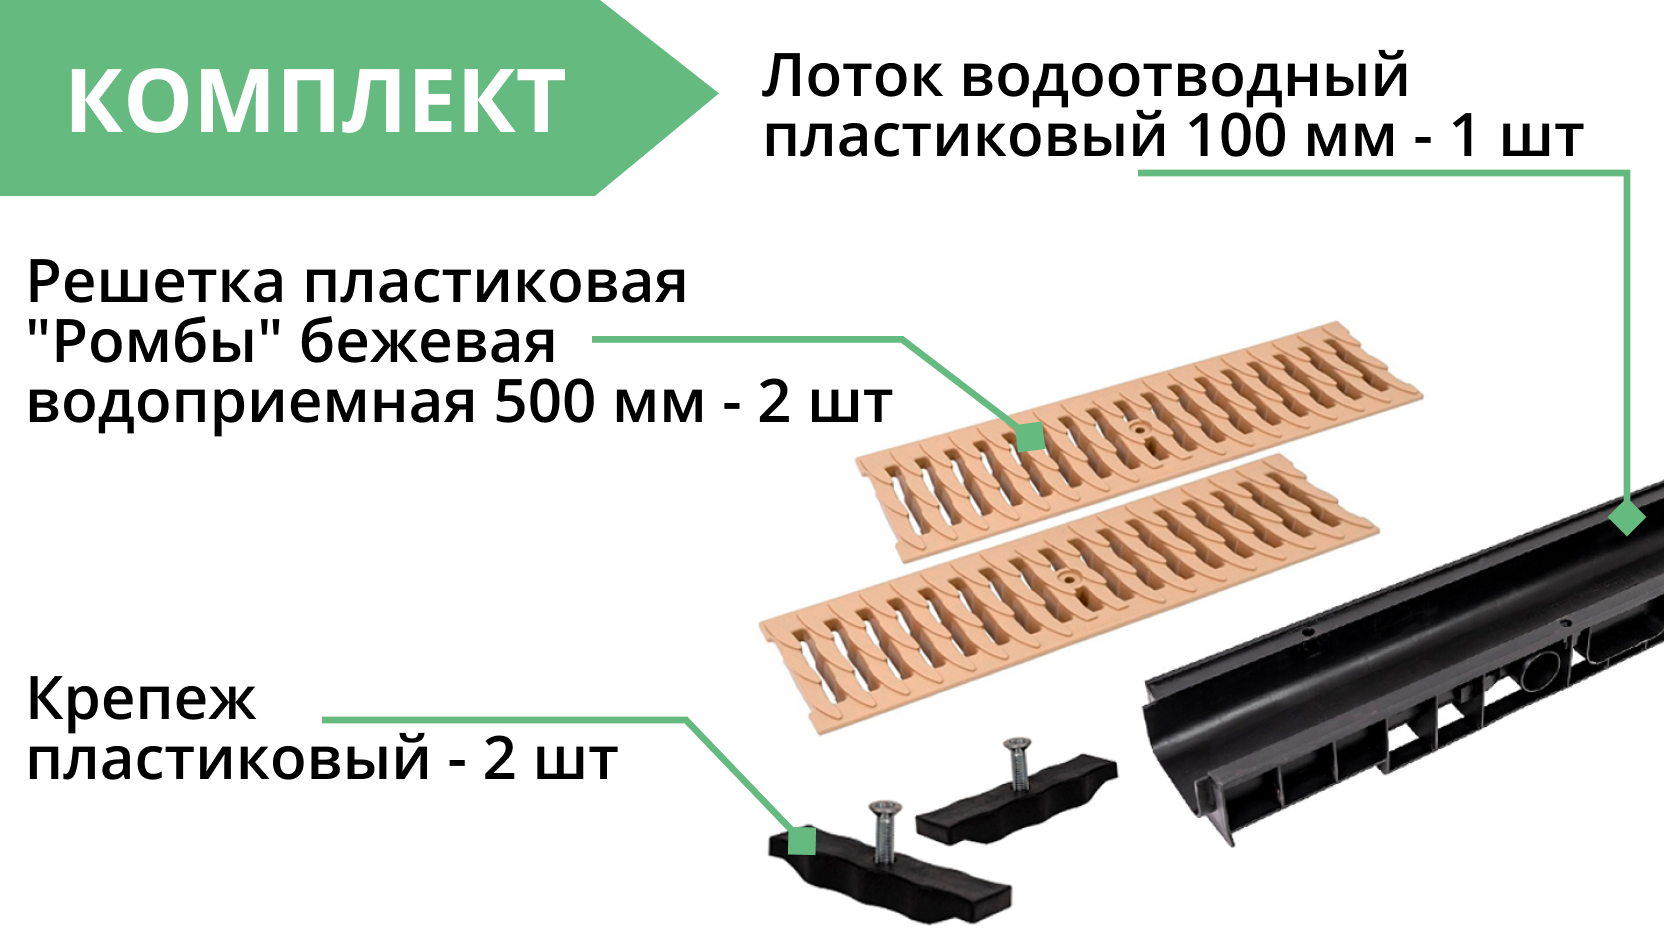 Комплект: Лоток Европартнер 100 мм с пластиковыми решетками бежевыми "Ромбы" 1 метр 3